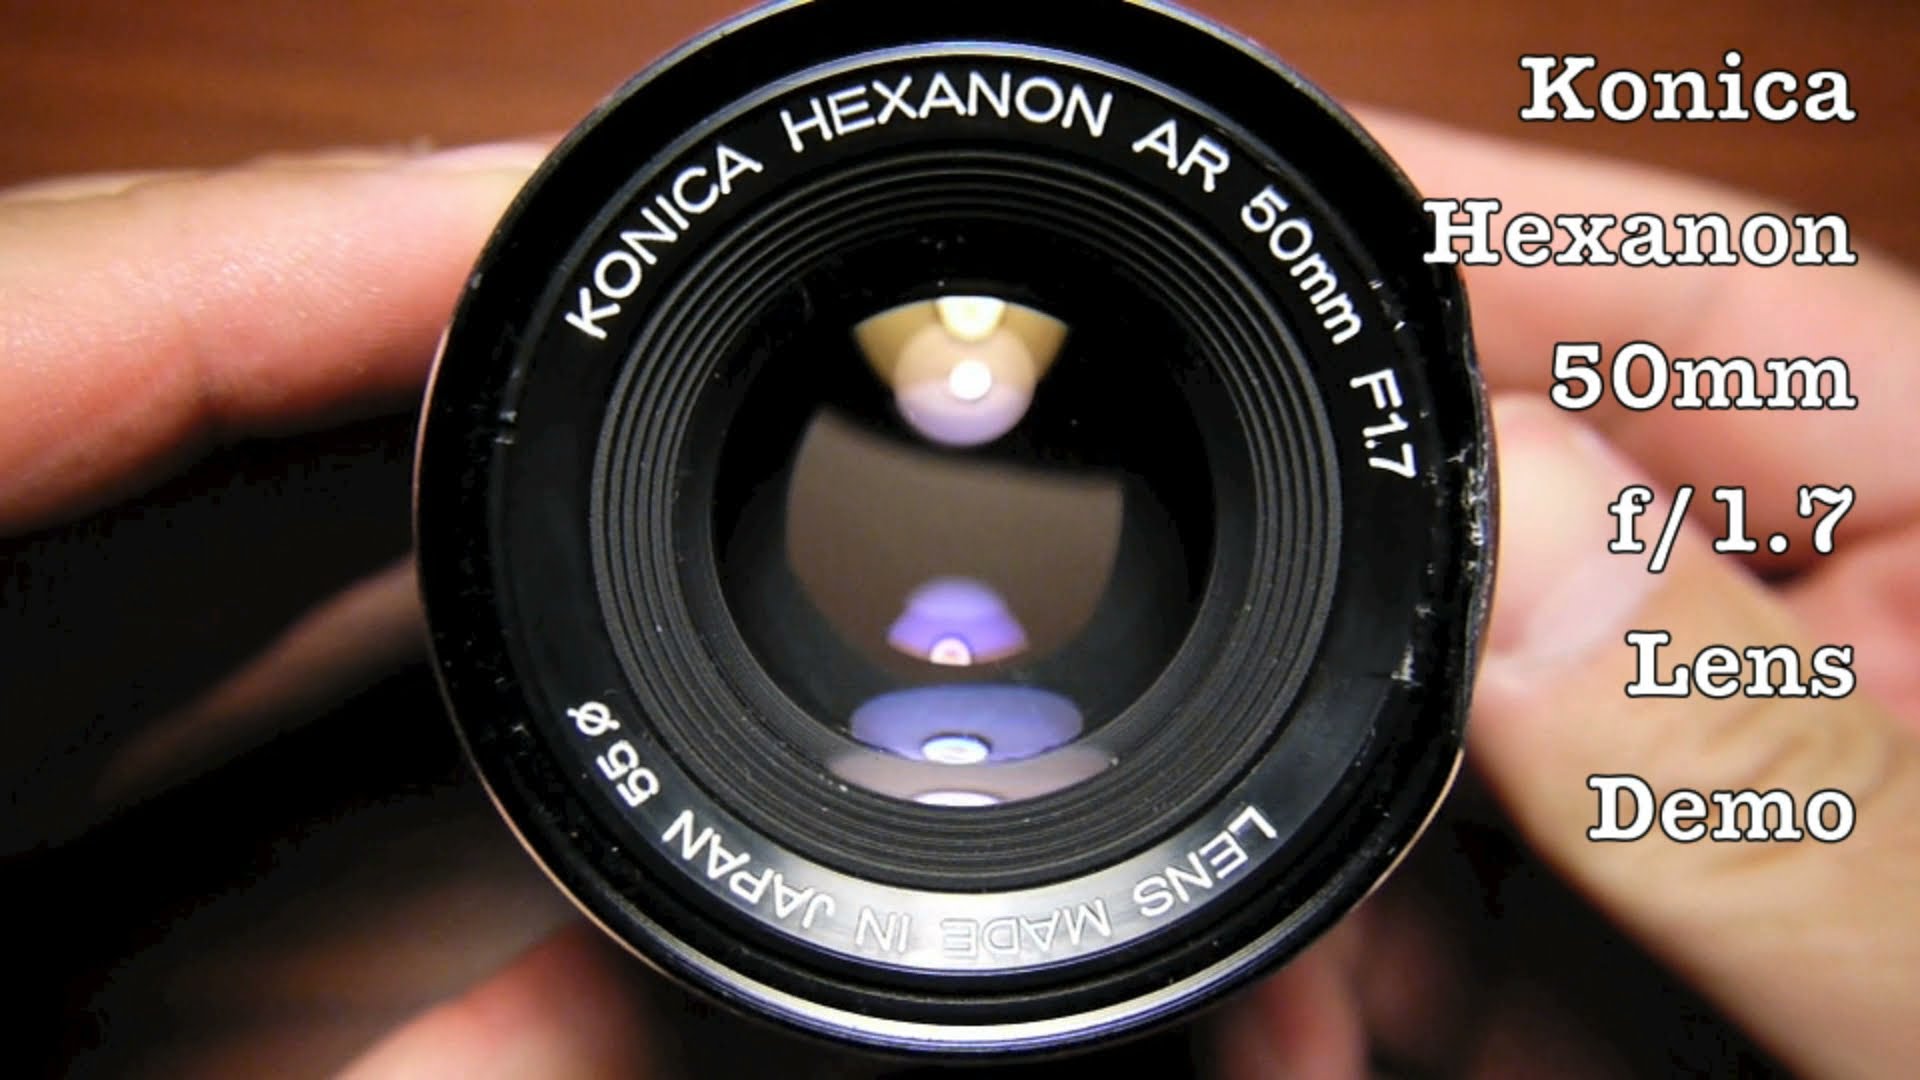 Konica Hexanon 50mm f/1.7 AR Mount Prime Lens For 35mm SLR Cameras / Mirrorless & DSLR w/ Adapter